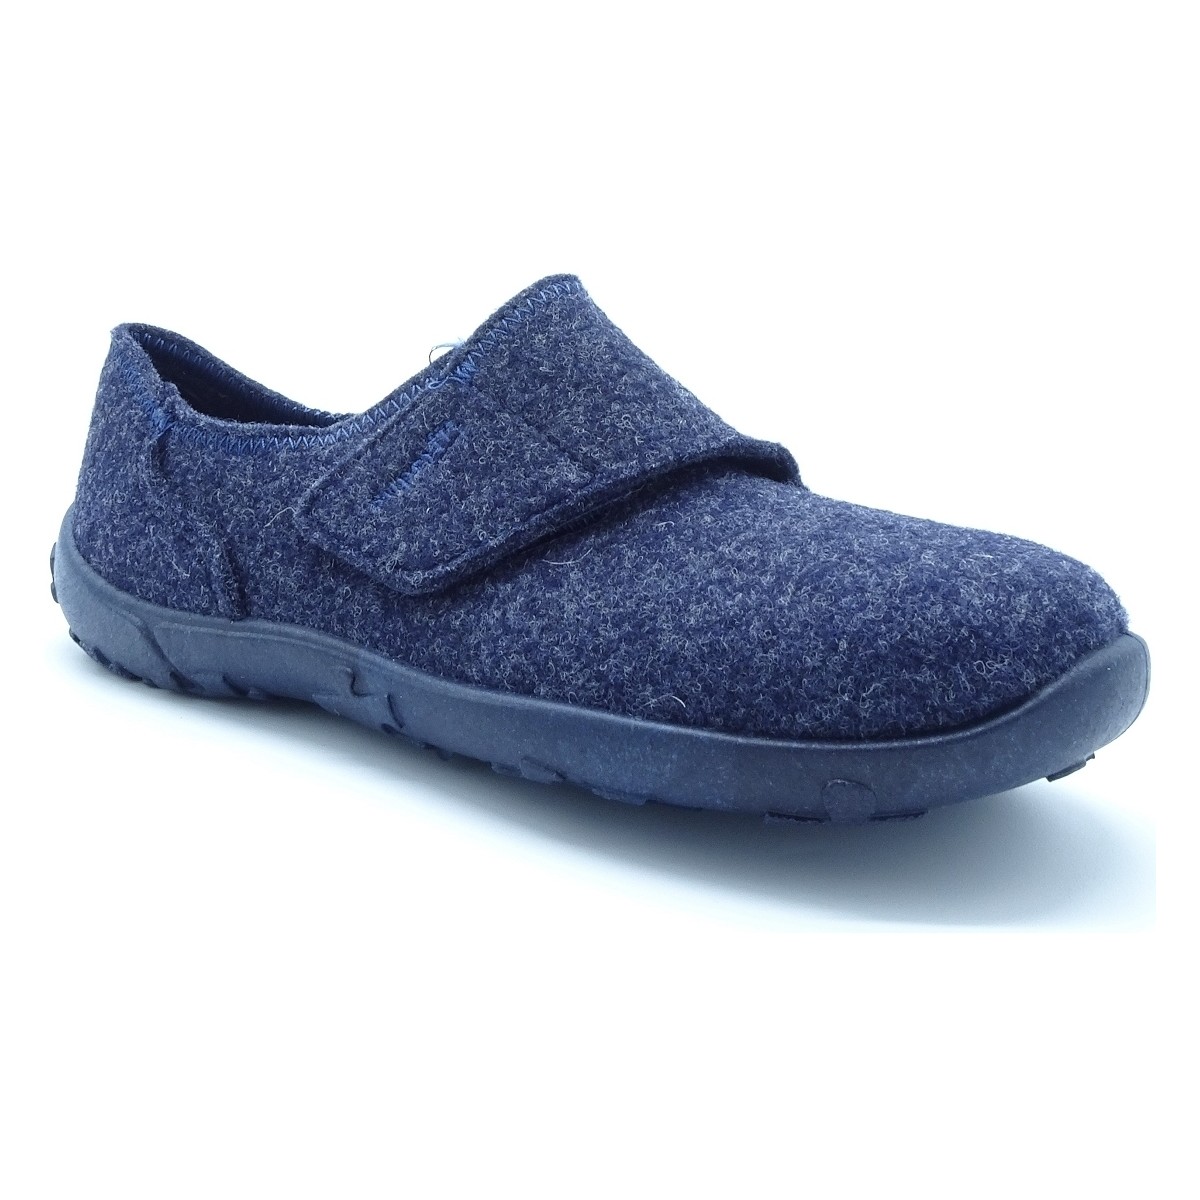 Chaussures Chaussons Superfit 6542 Bleu